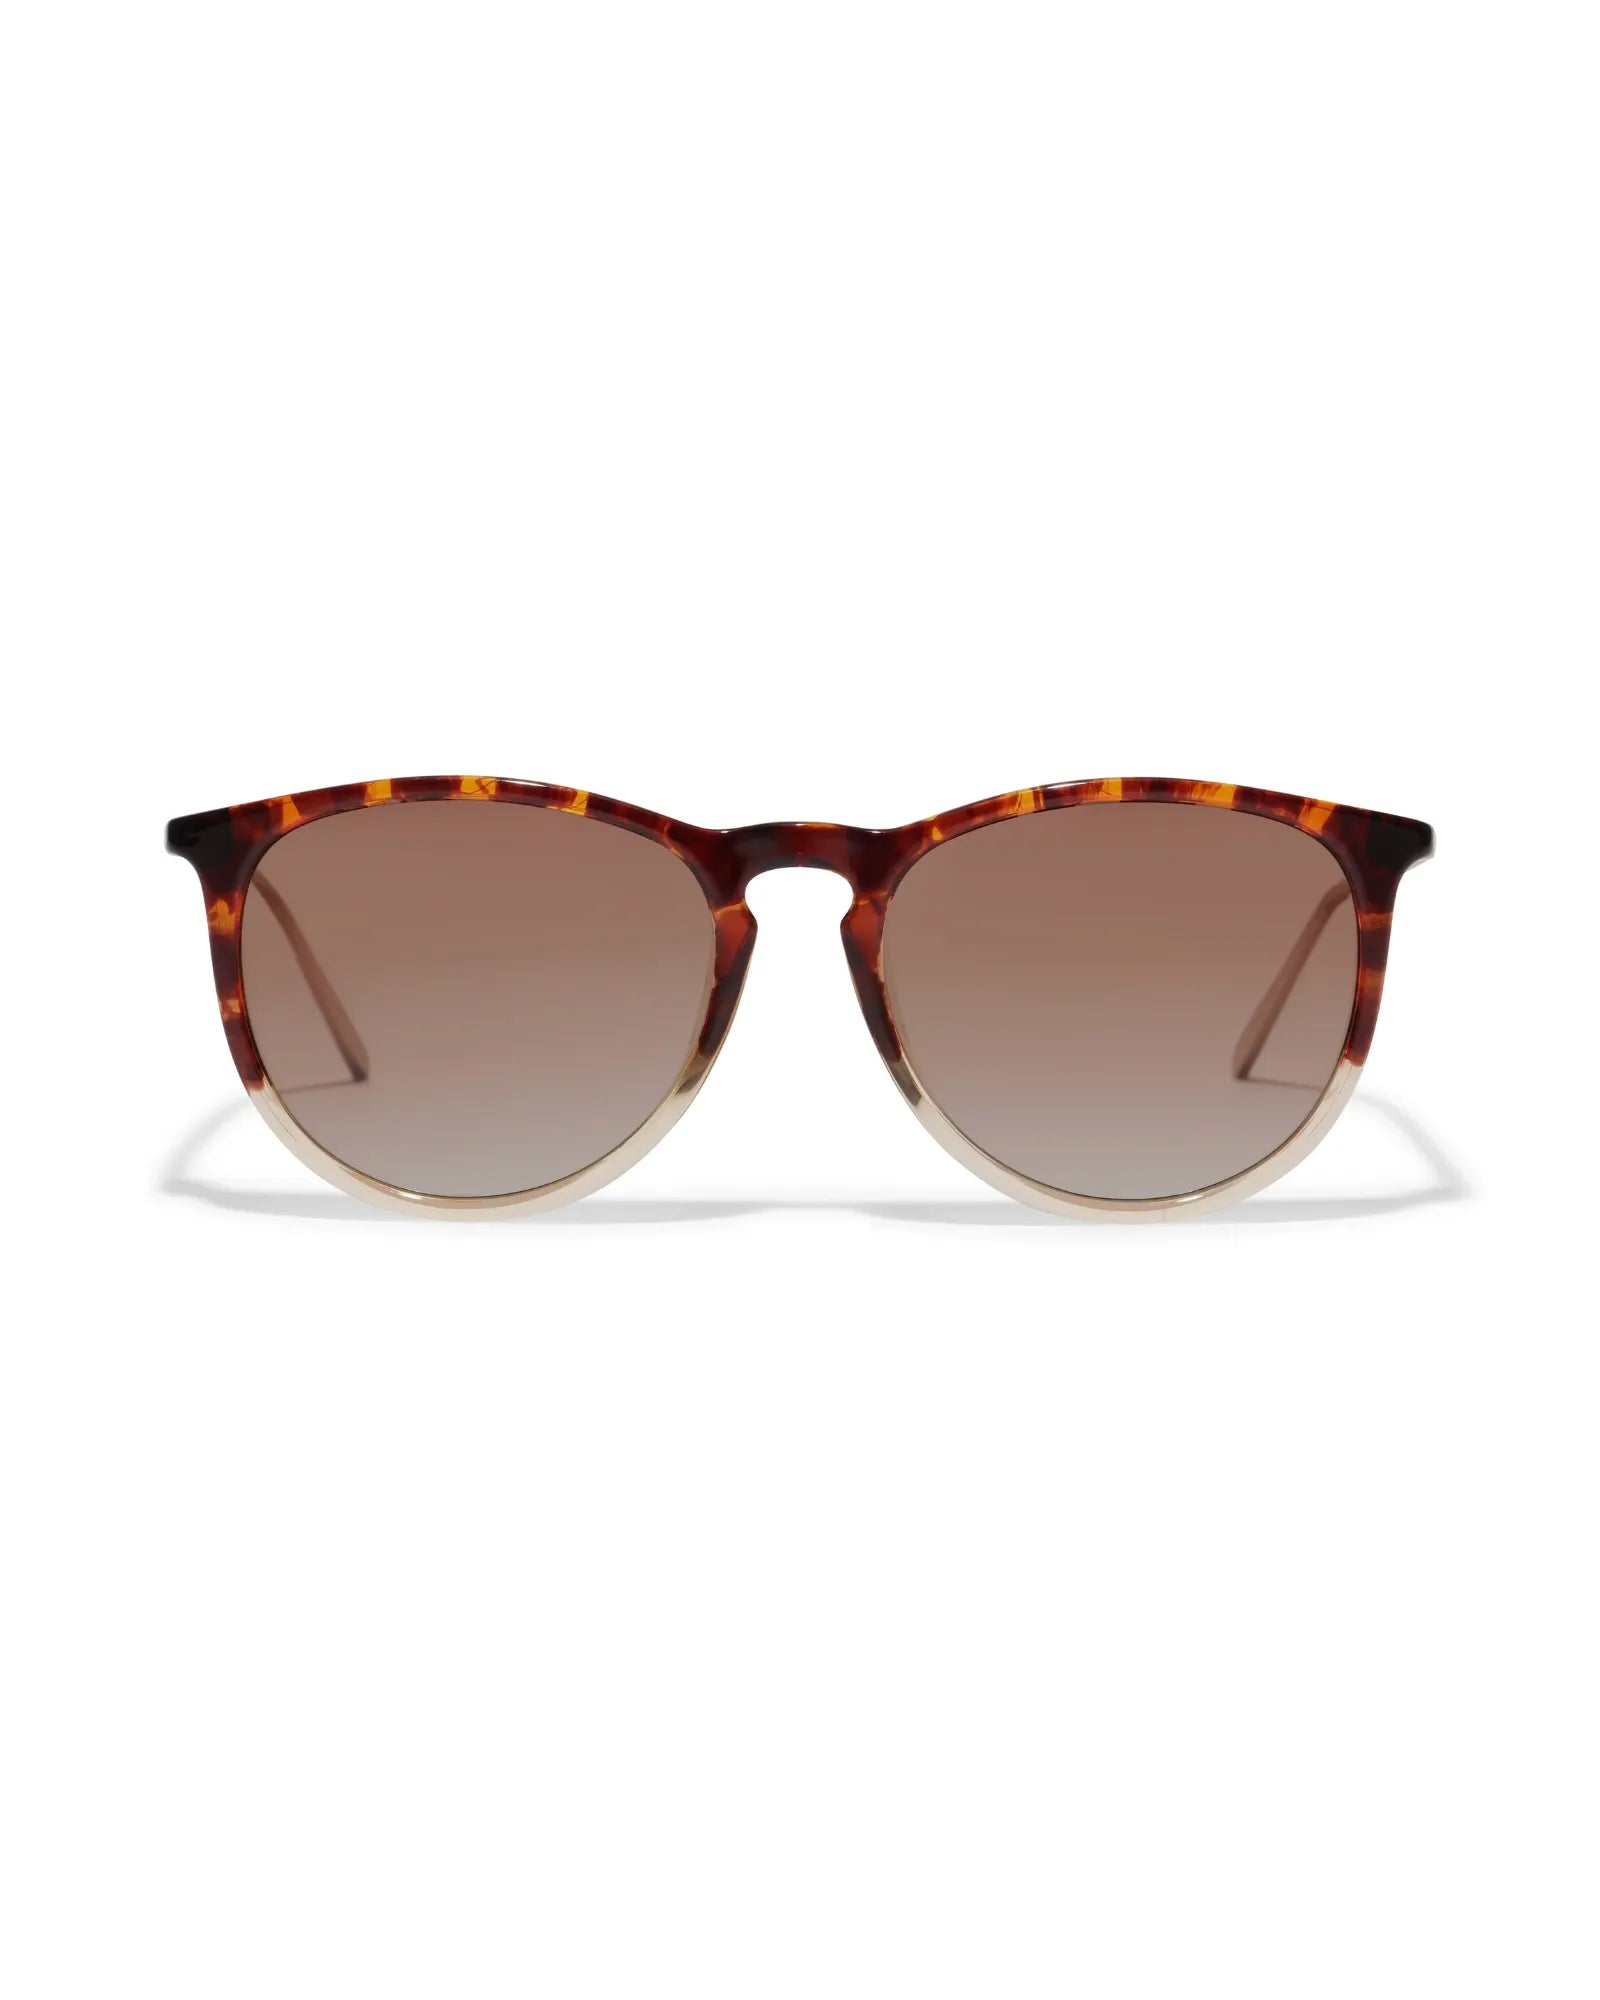 VANILLE Sunglasses - Light Tortoise Brown/Gold